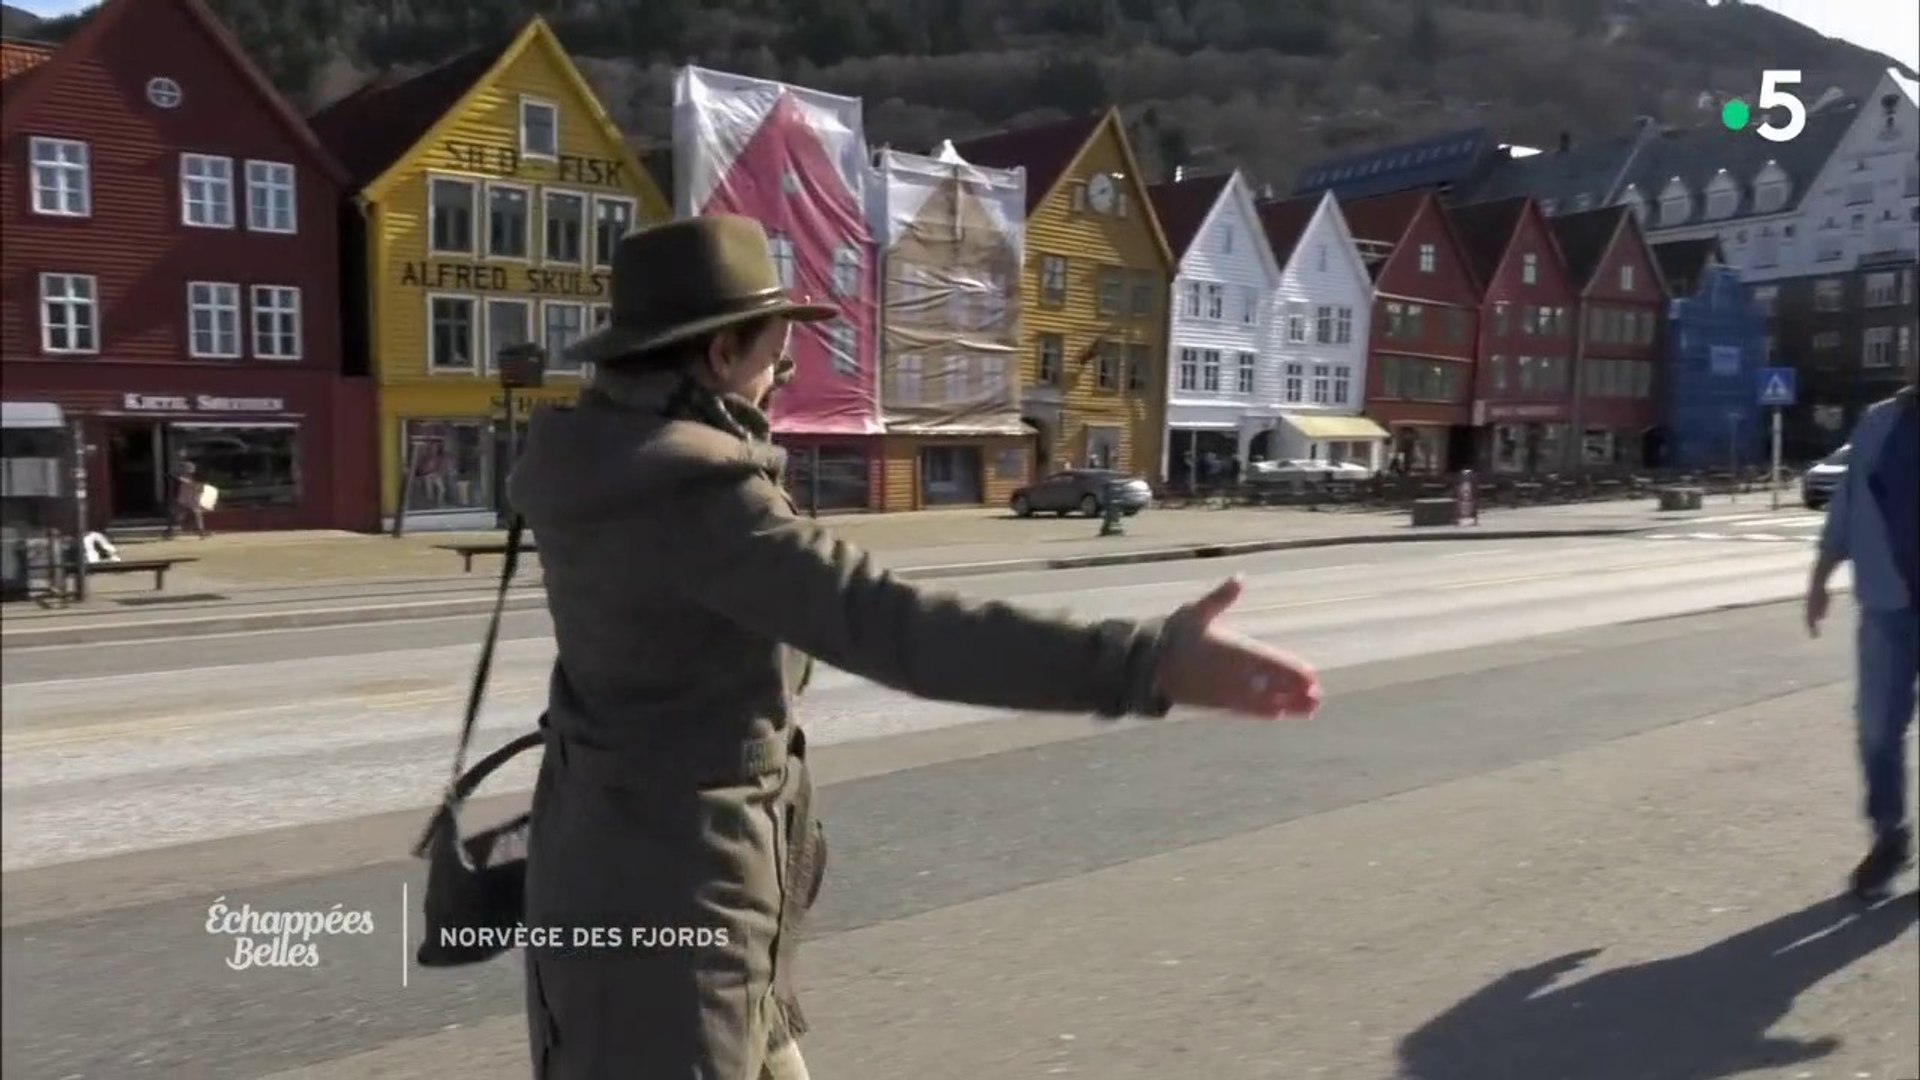 Norvège, la magie des fjords - Échappées belles - Vidéo Dailymotion